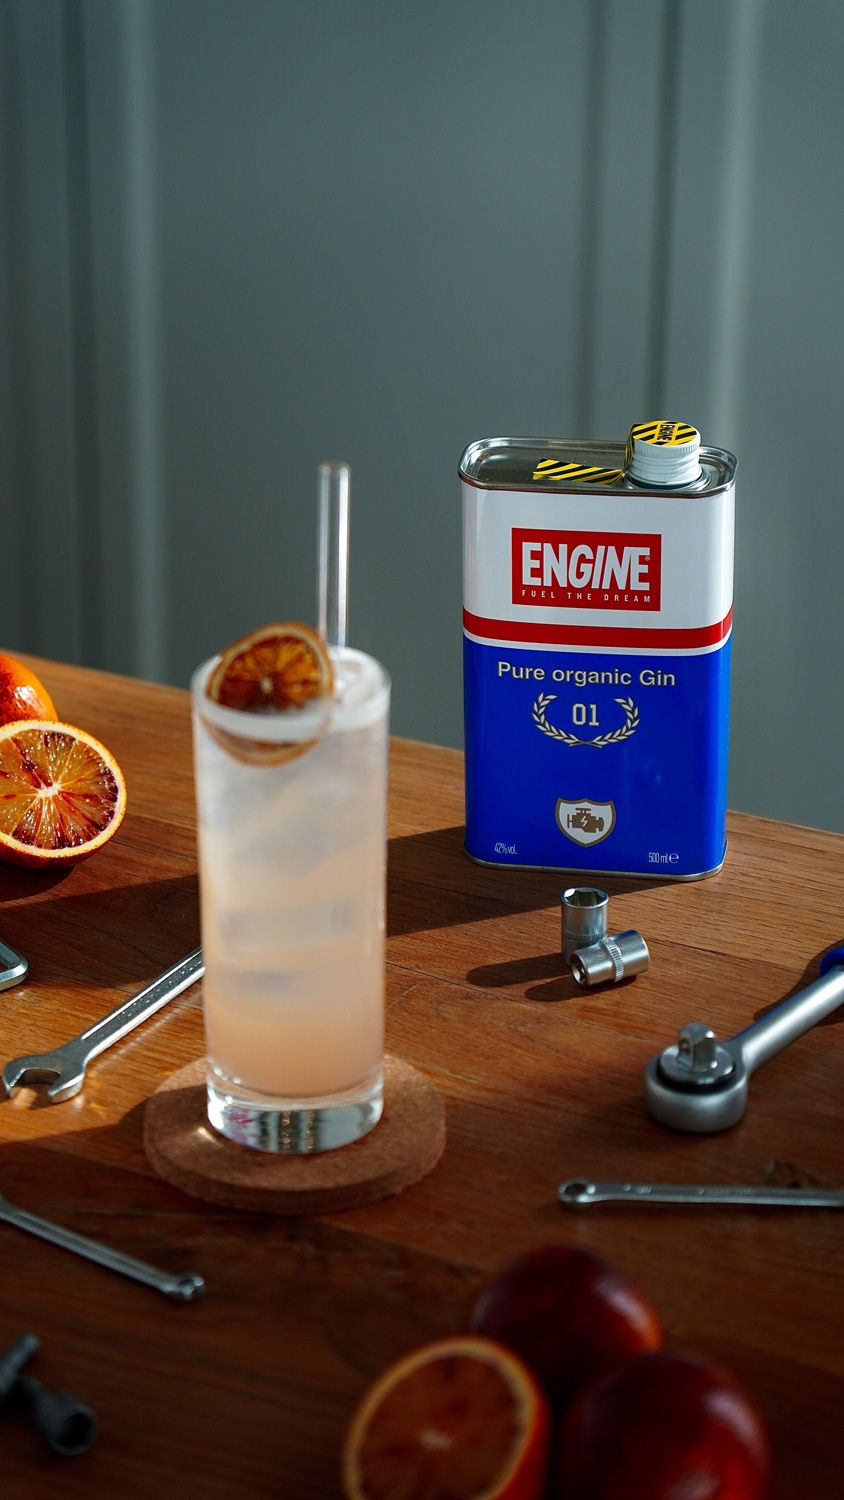 Weibel Weine - Engine Pure organic Gin